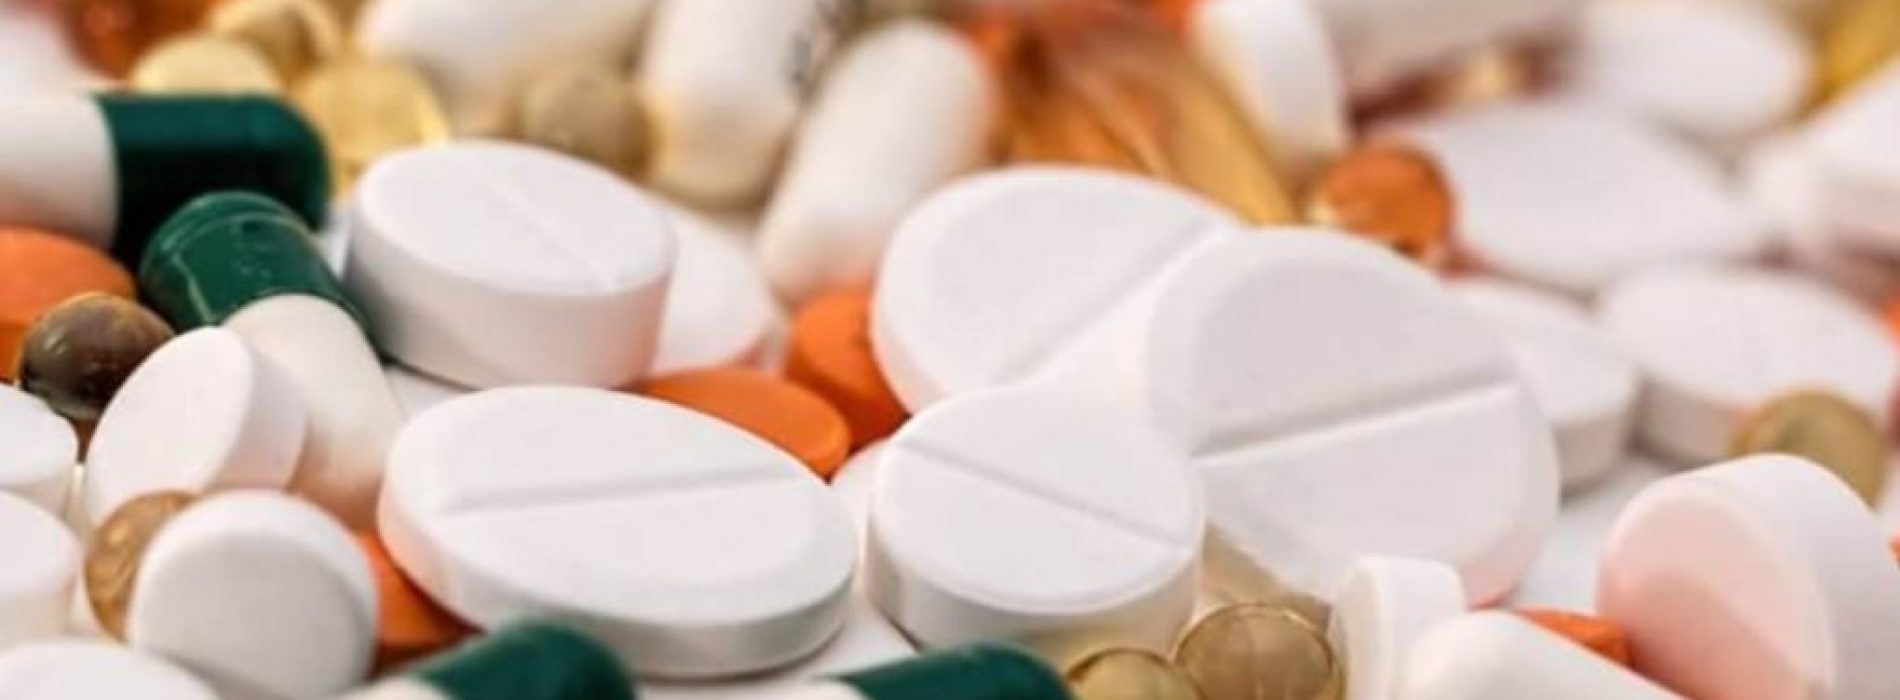 Big Pharma faalt: geen bewijs van toegevoegd voordeel in de meeste nieuwe geneesmiddelen volgens studie